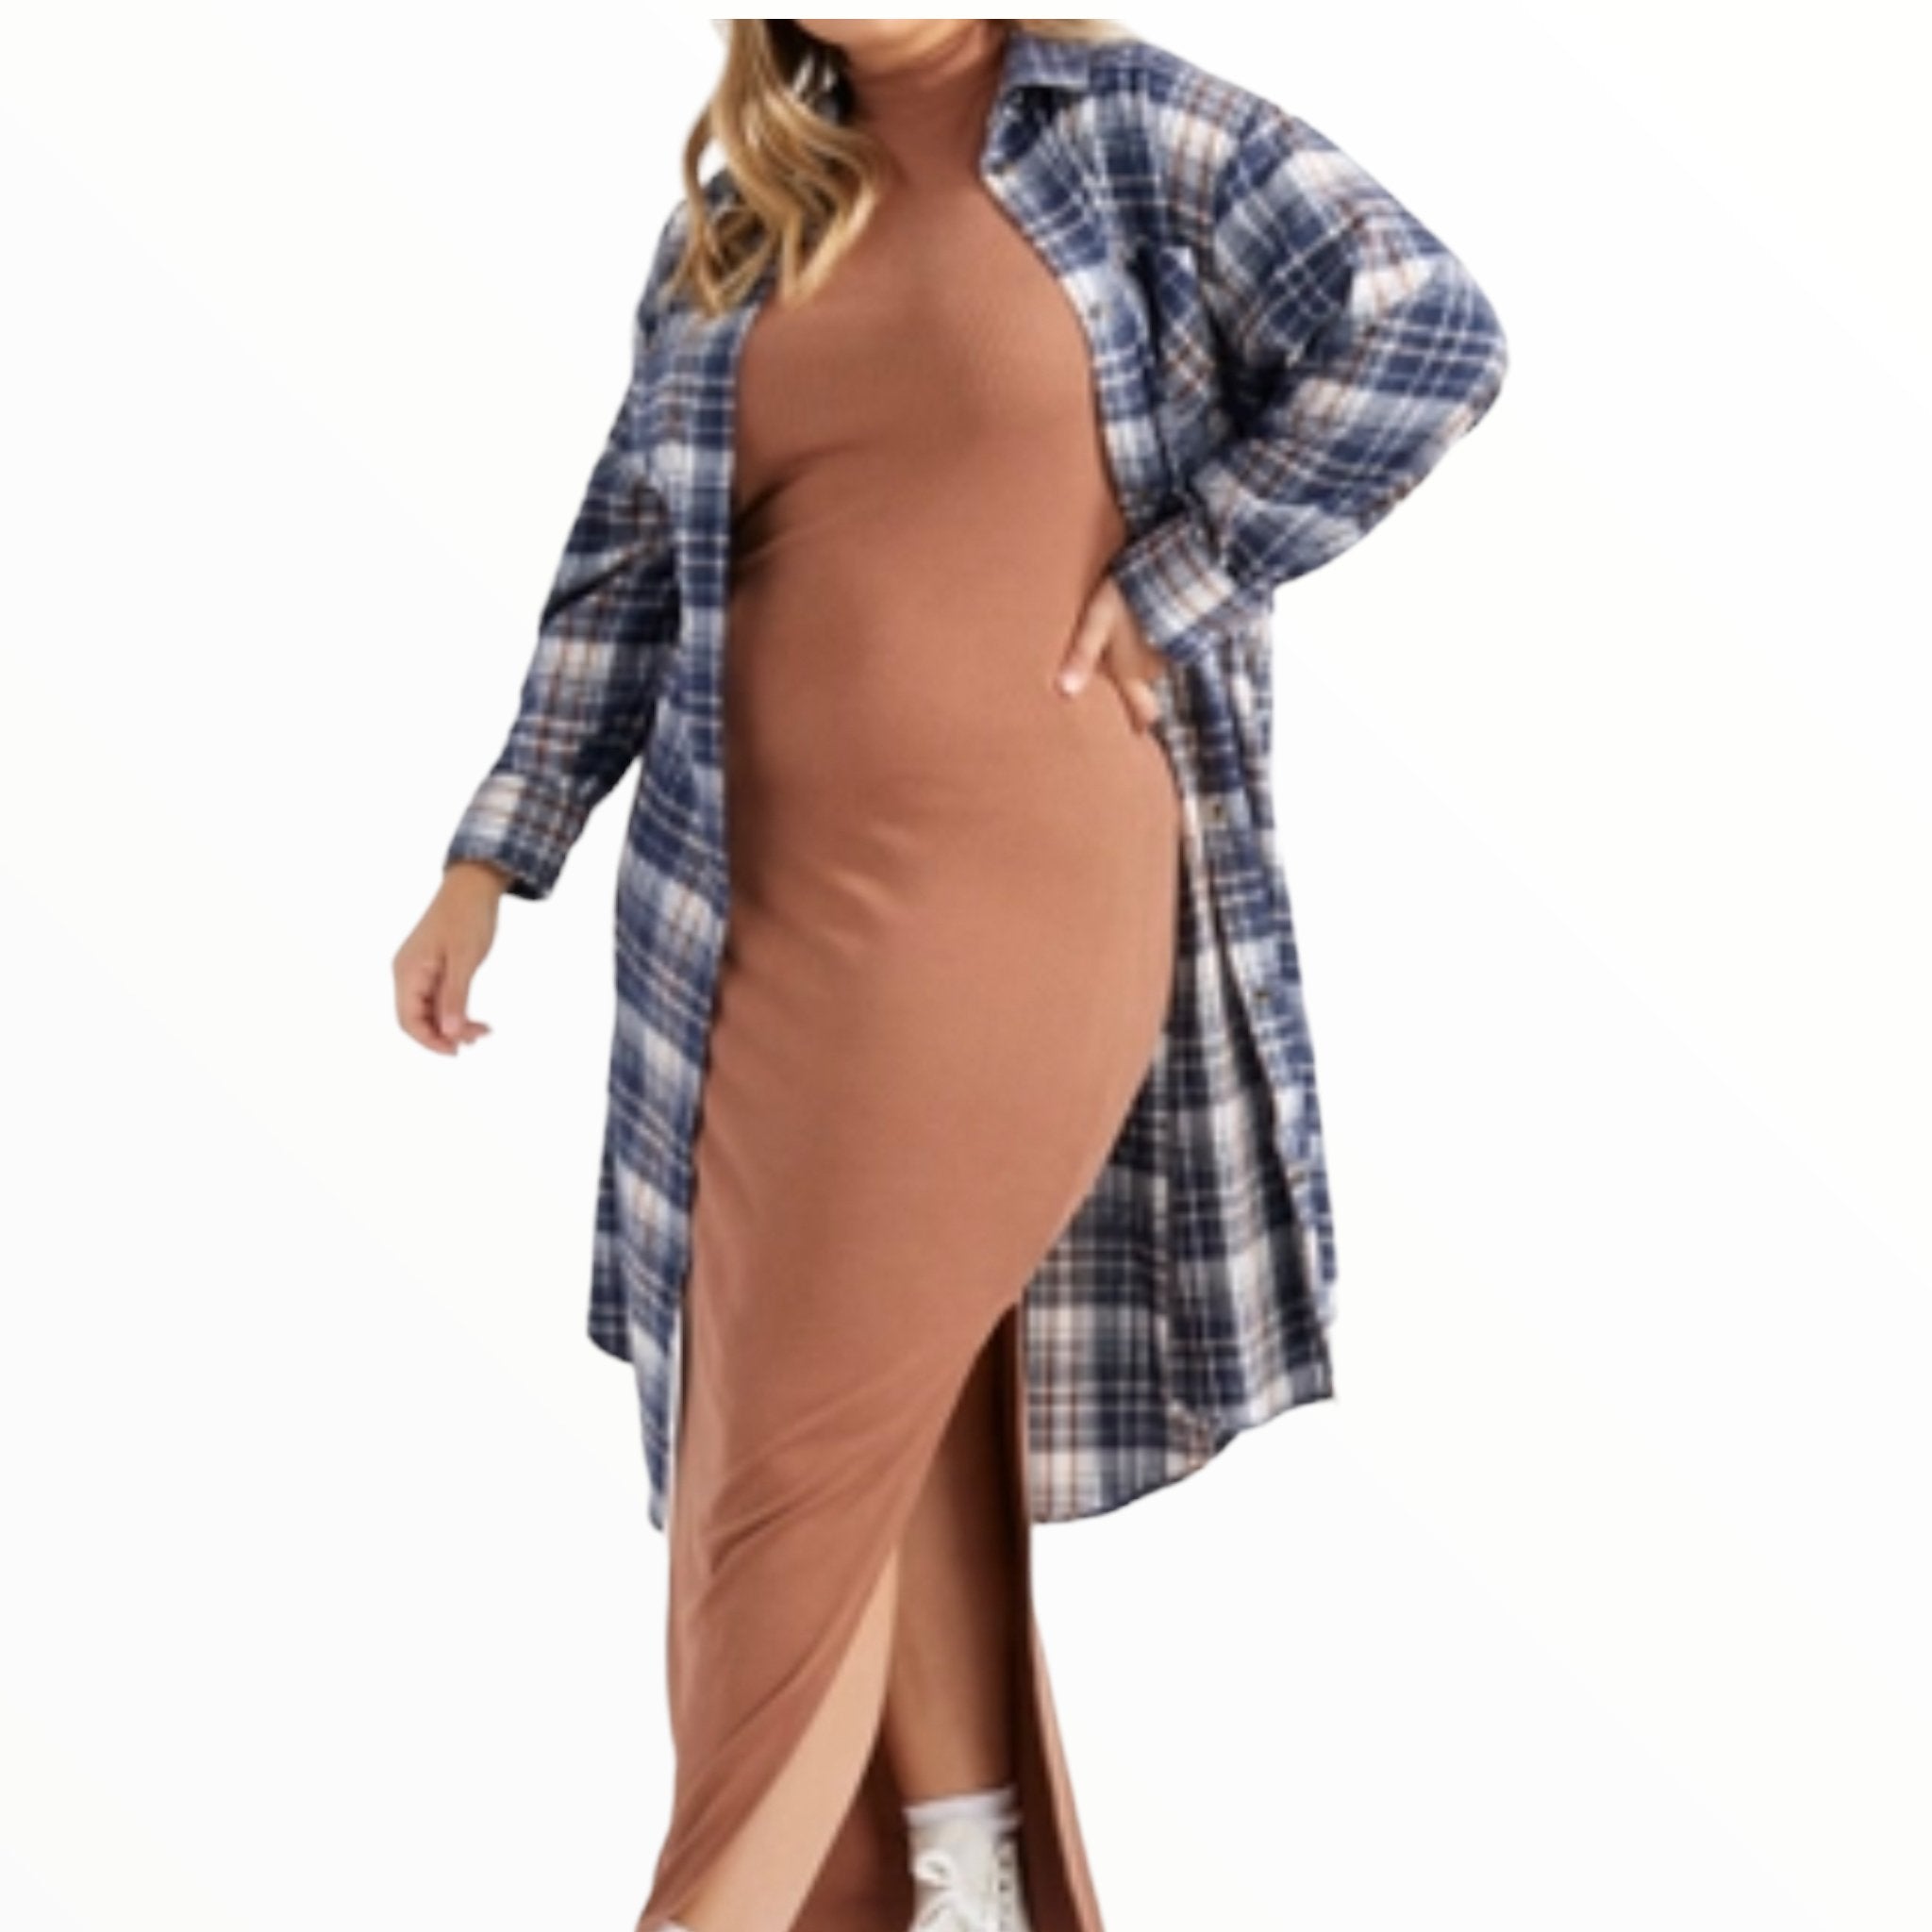 Women's Plus Size Plaid Duster/Dress - Fabulously Dressed Boutique